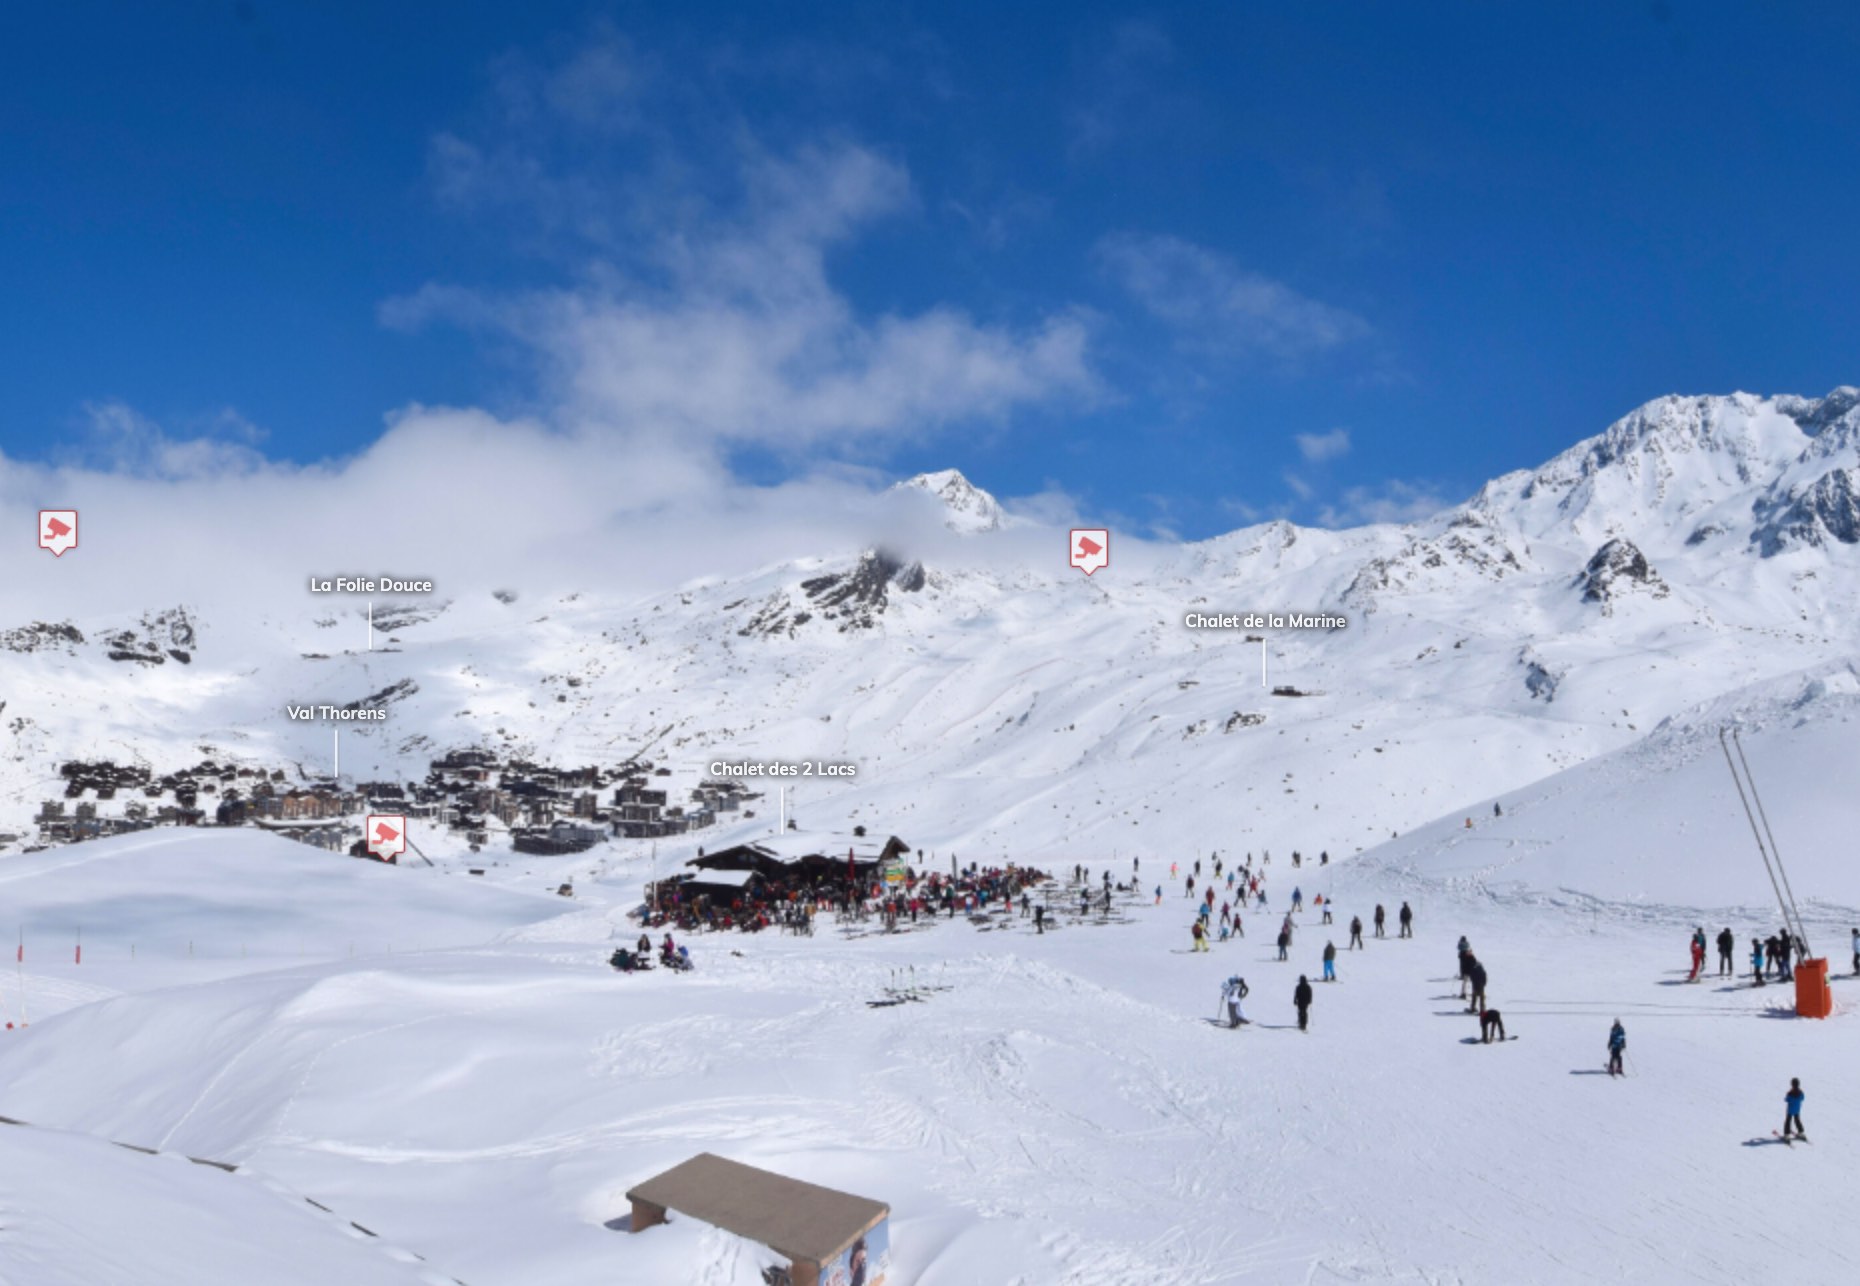 Los Alpes franceses, el destino más cercano para hallar nieve polvo esta Semana Santa